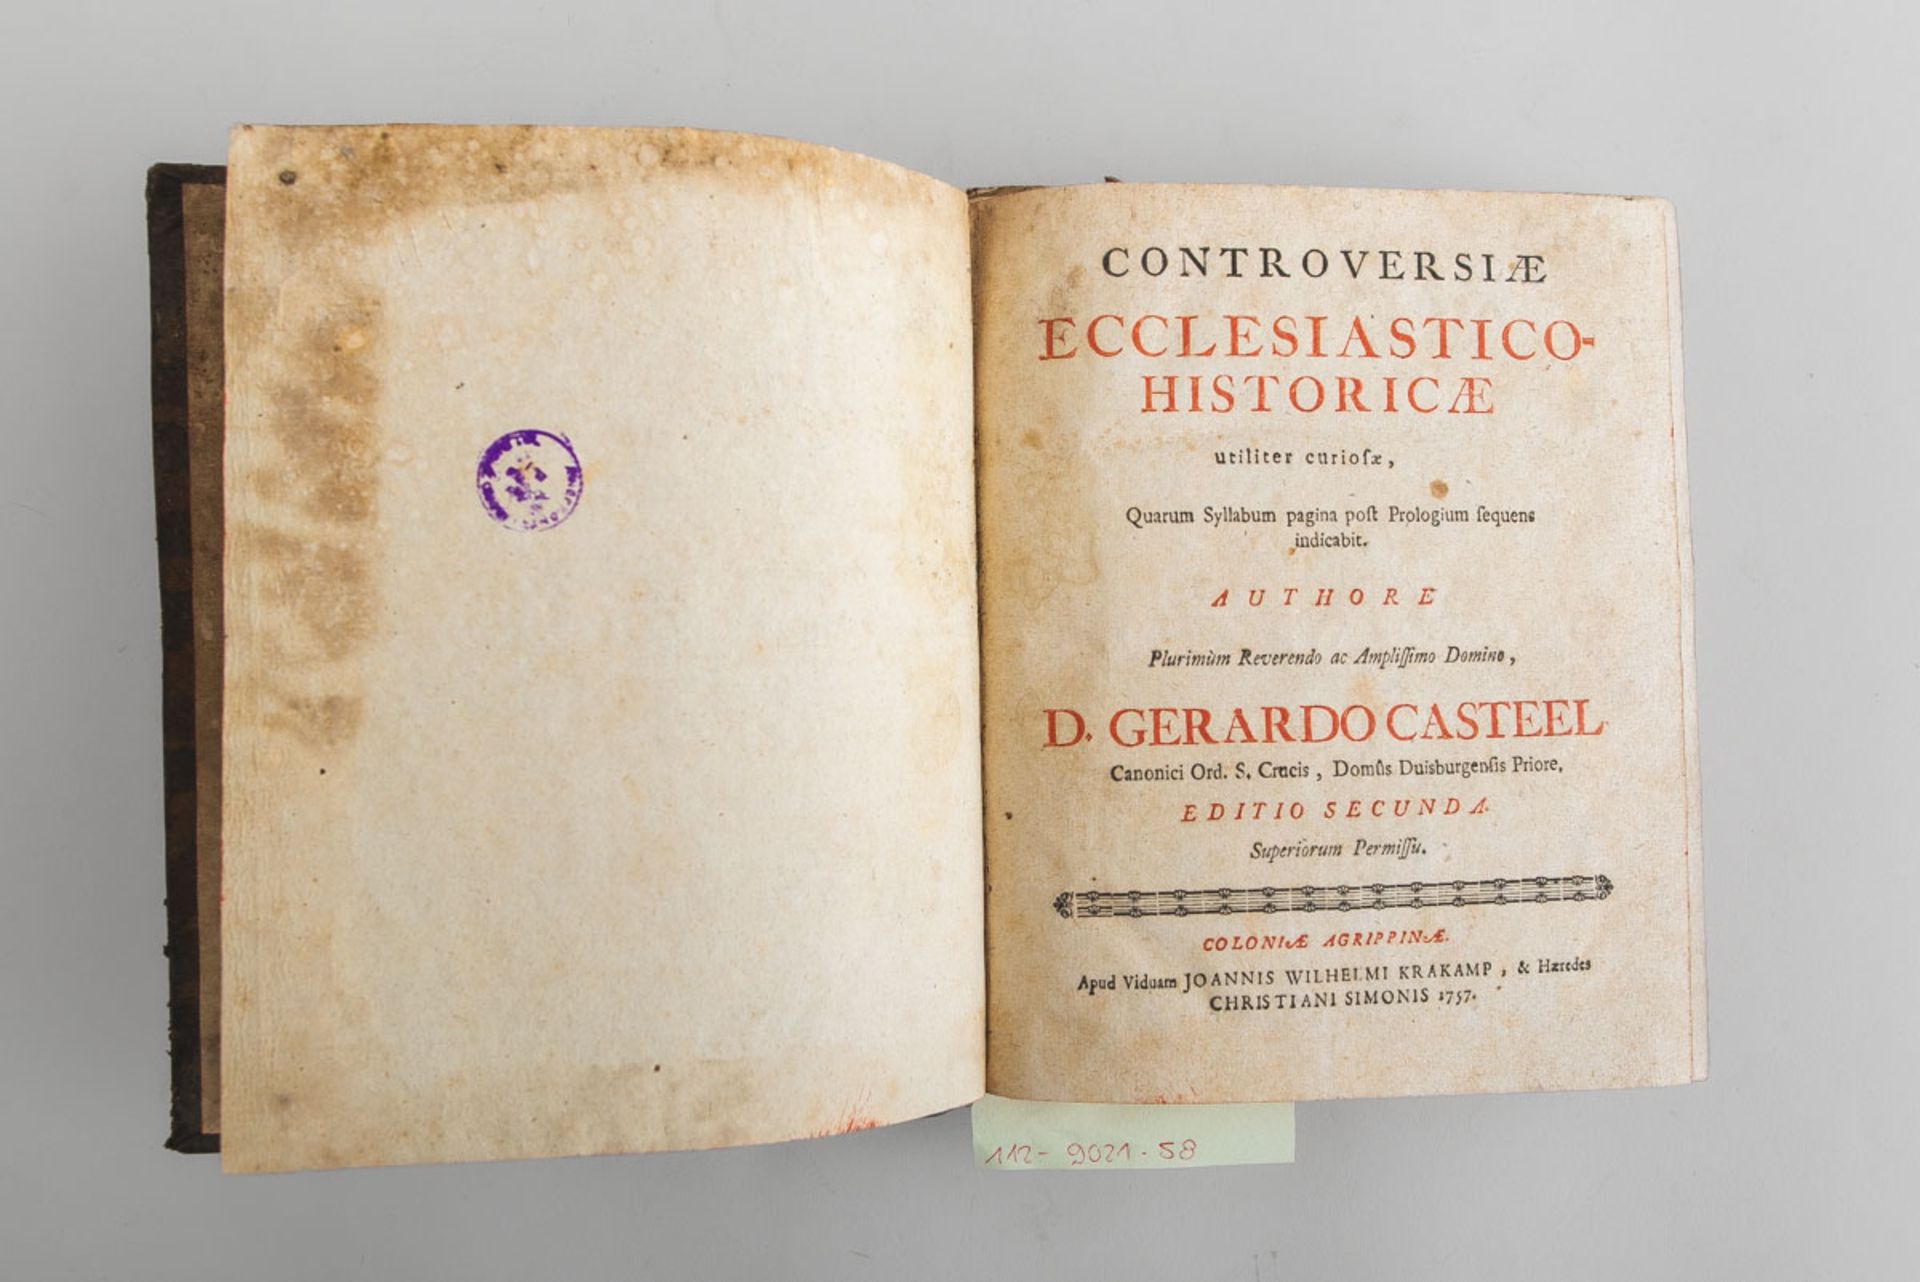 D. Gerardo Casteel Controversiae Ecclasiastico Historicae ed. Secunde